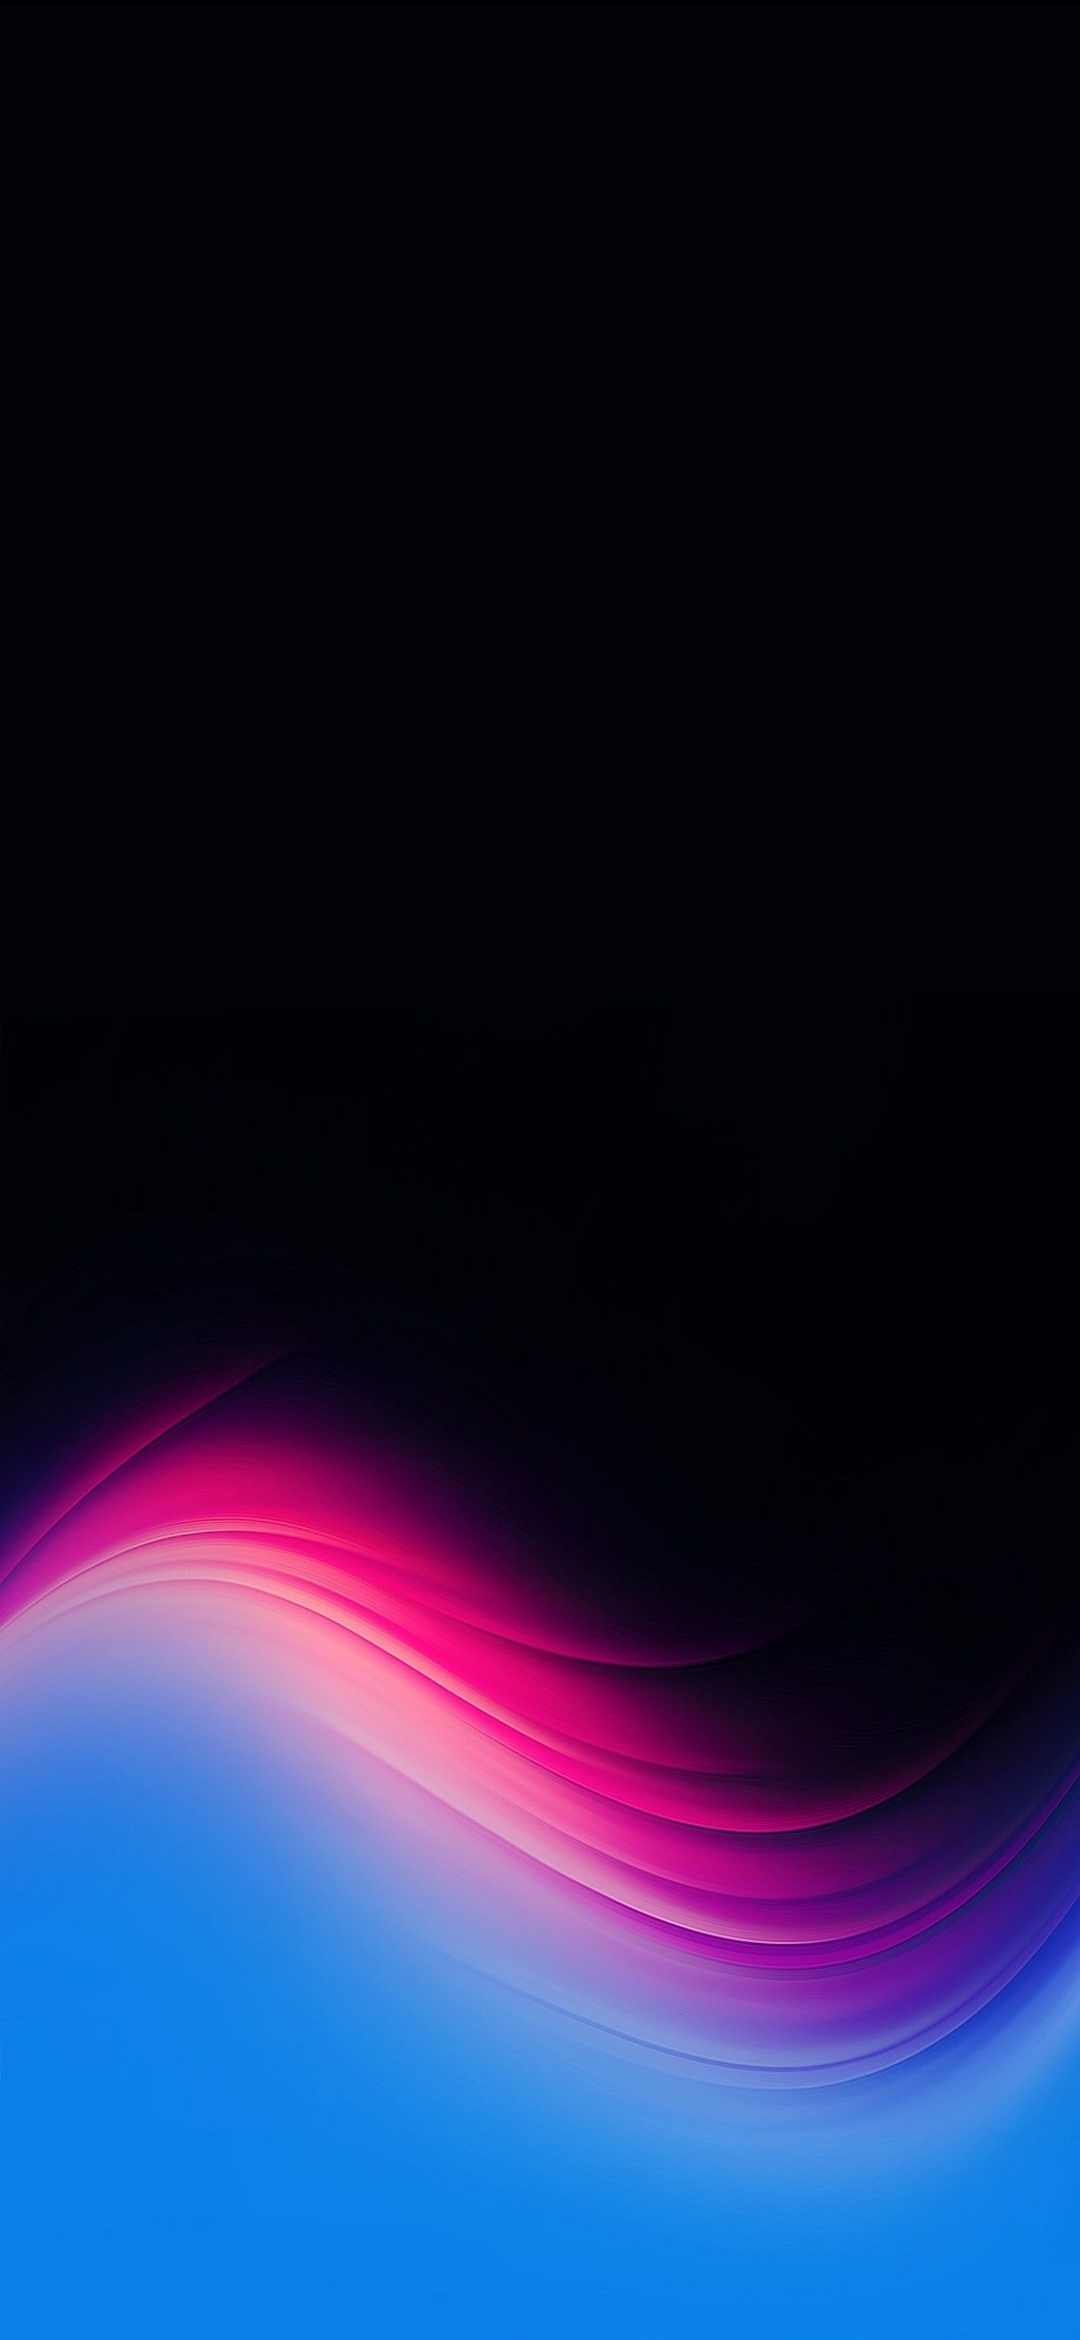 クールな水色 ピンク 黒のテクスチャー Redmagic 5 Android 壁紙 待ち受け Sumaran